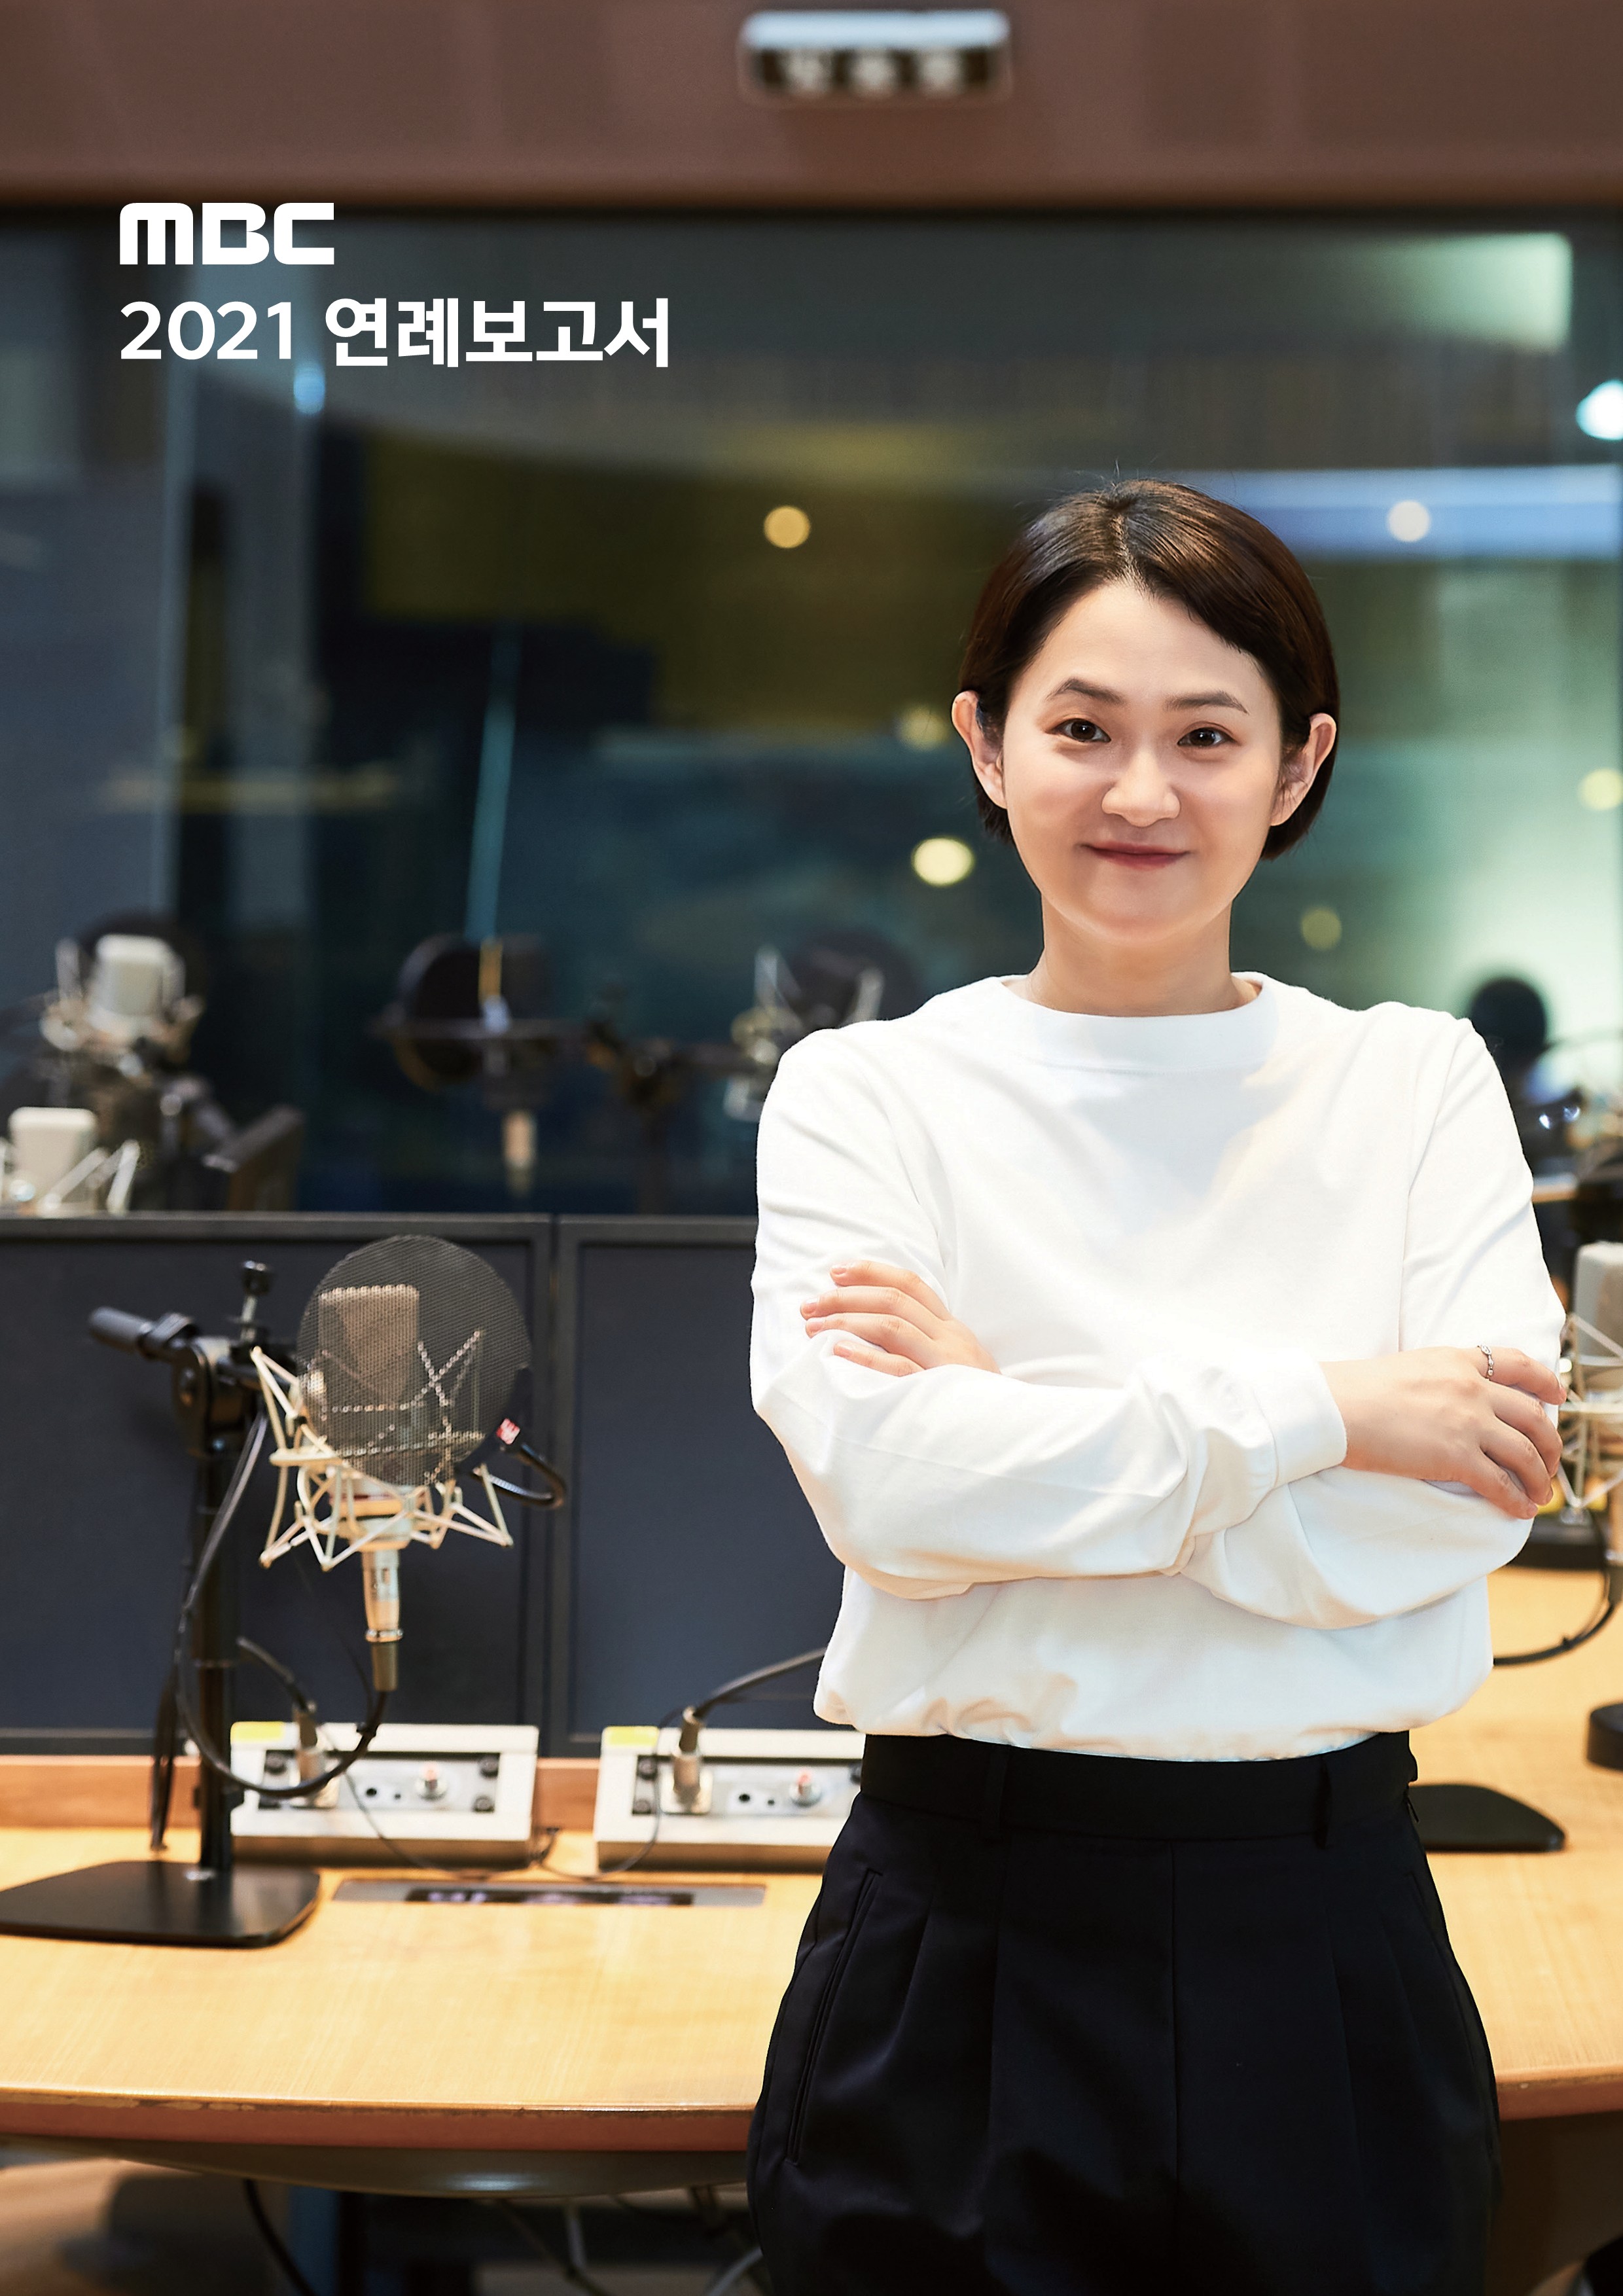 MBC 2021 연례보고서, 김신영 사진